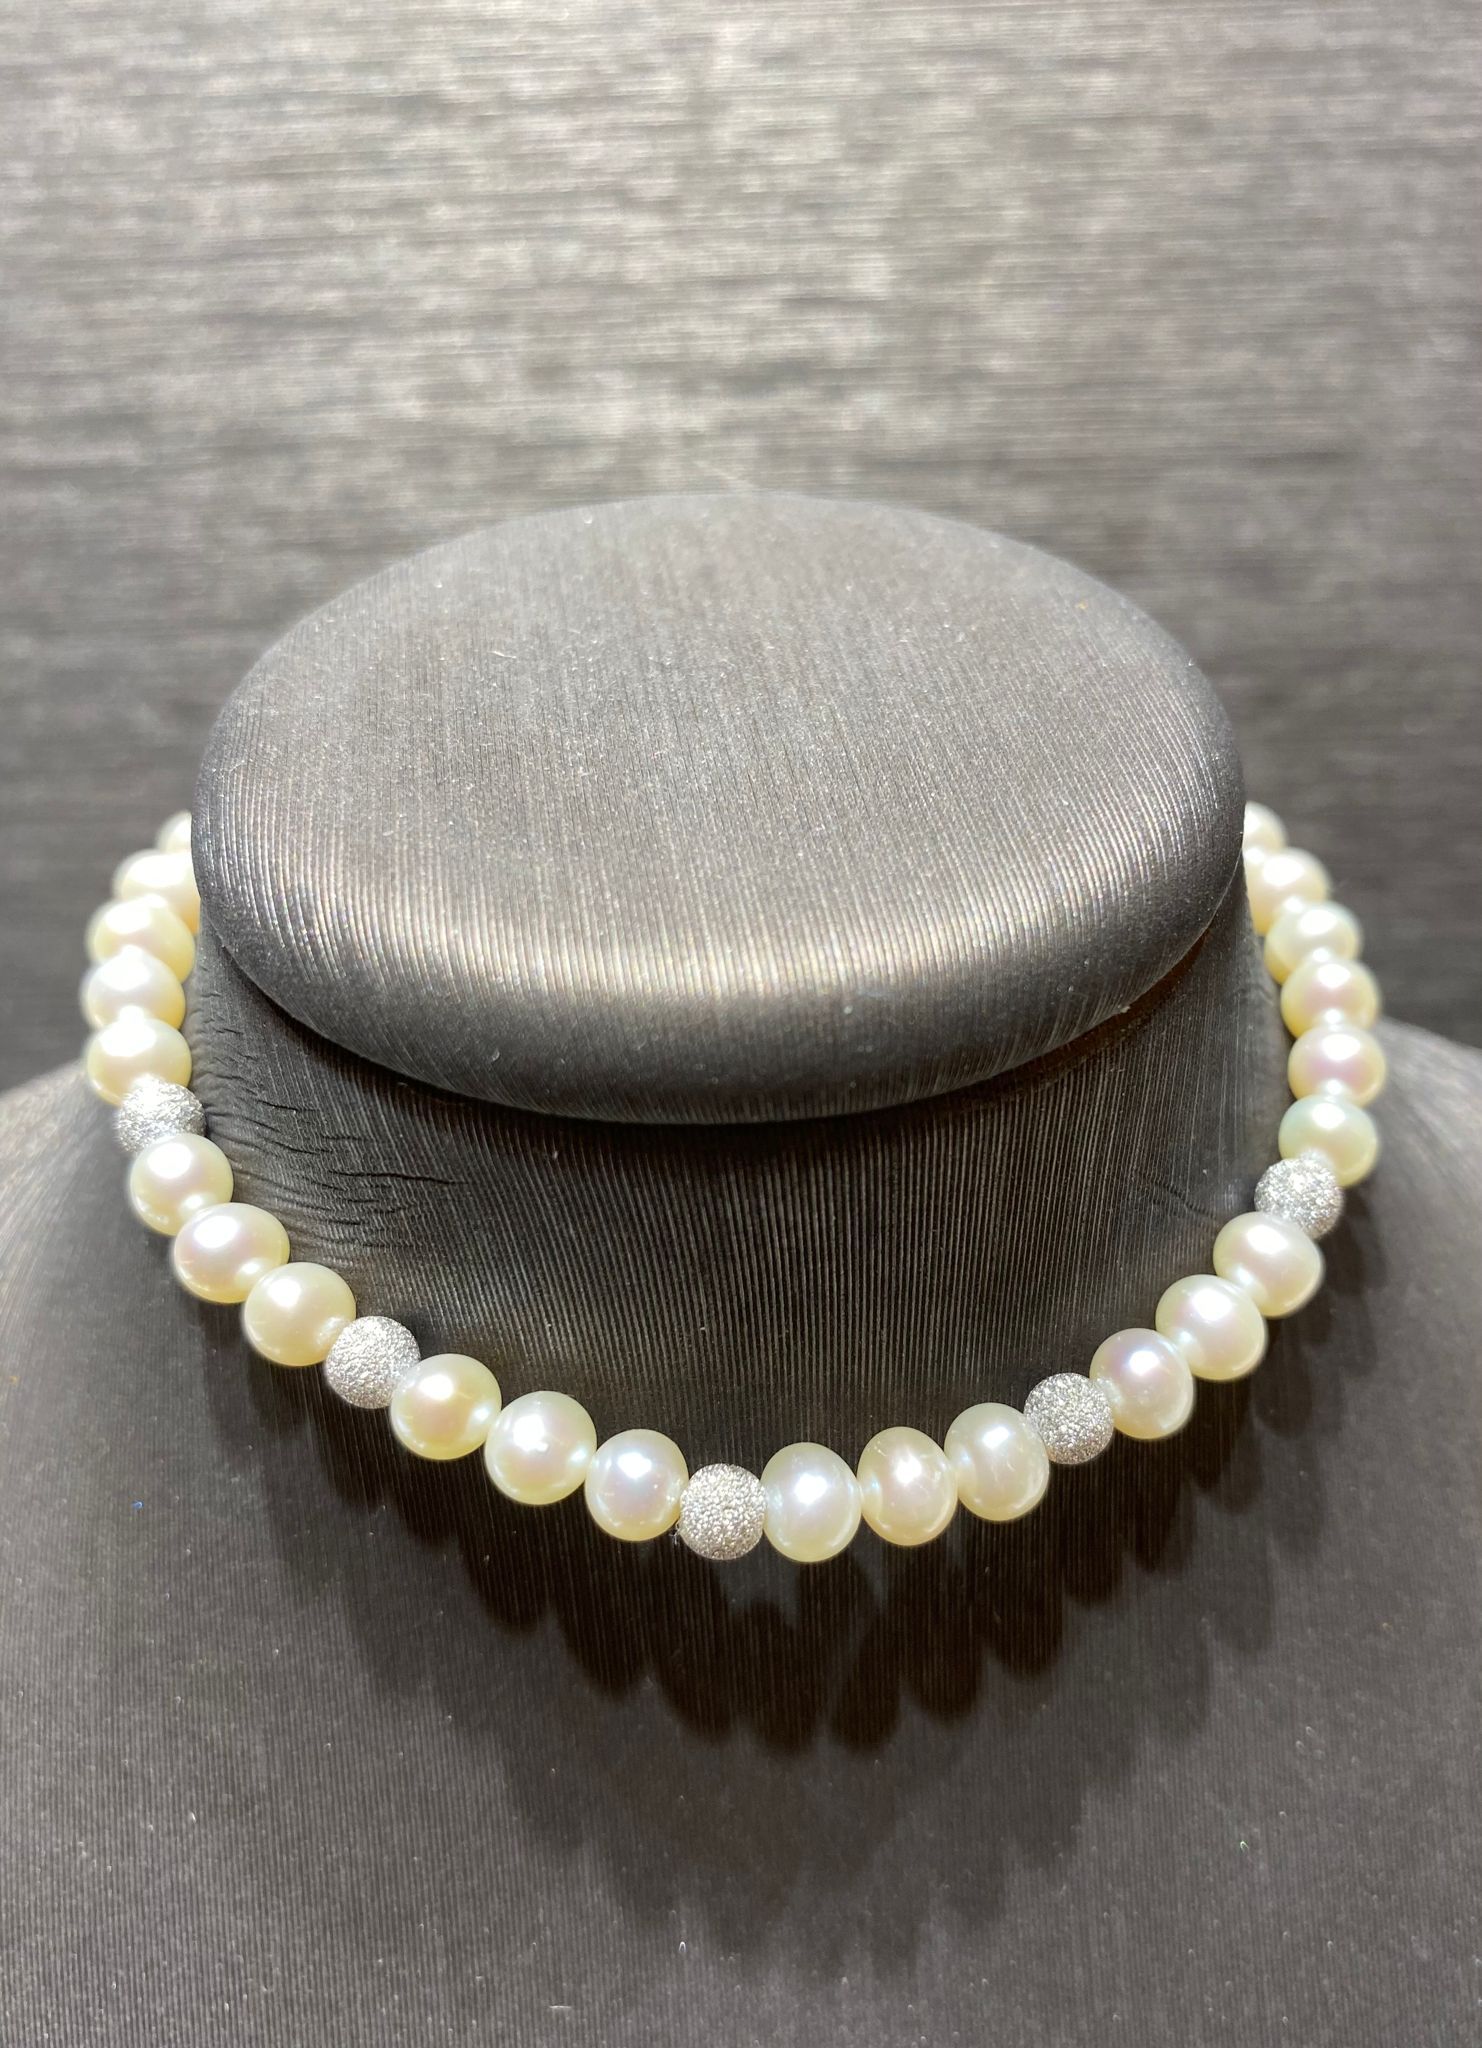 bracciale perle freshwater mm 4,5-5 chiusura oro bianco 750% sfere oro bianco 750%